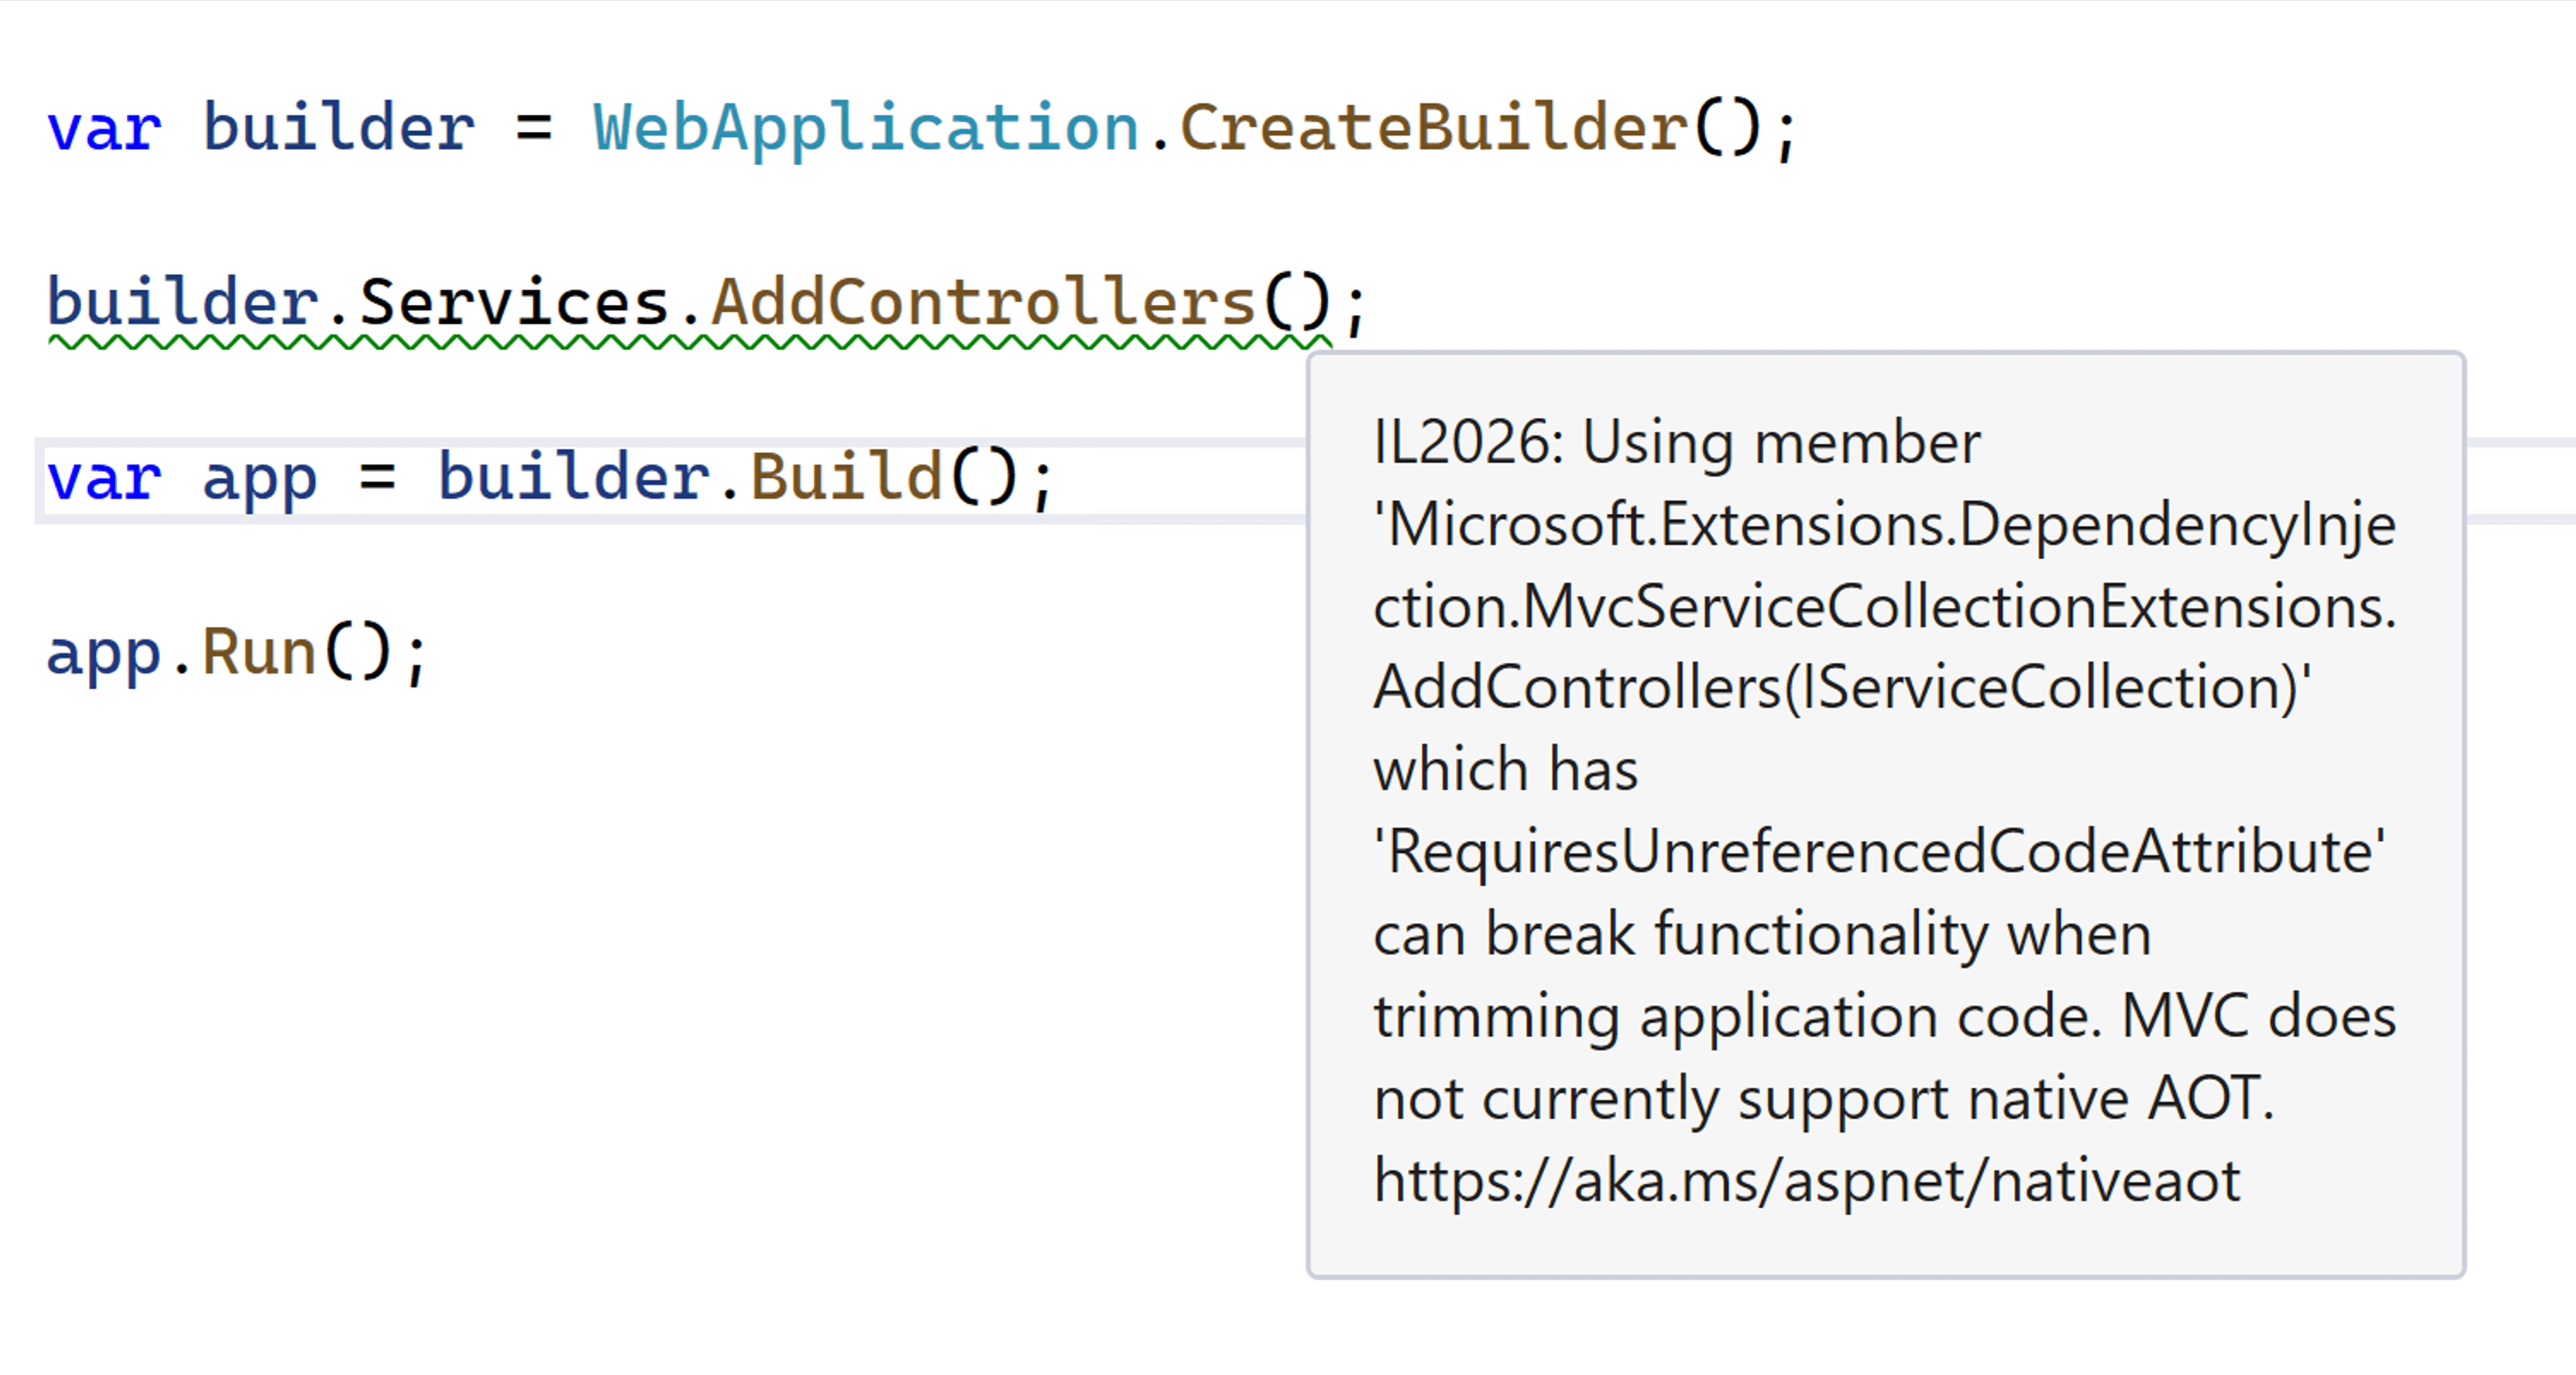 Visual Studio-Fenster mit Warnmeldung IL2026 für die AddControllers-Methode, mit dem Hinweis, dass MVC derzeit keine native AOT-Kompilierung unterstützt